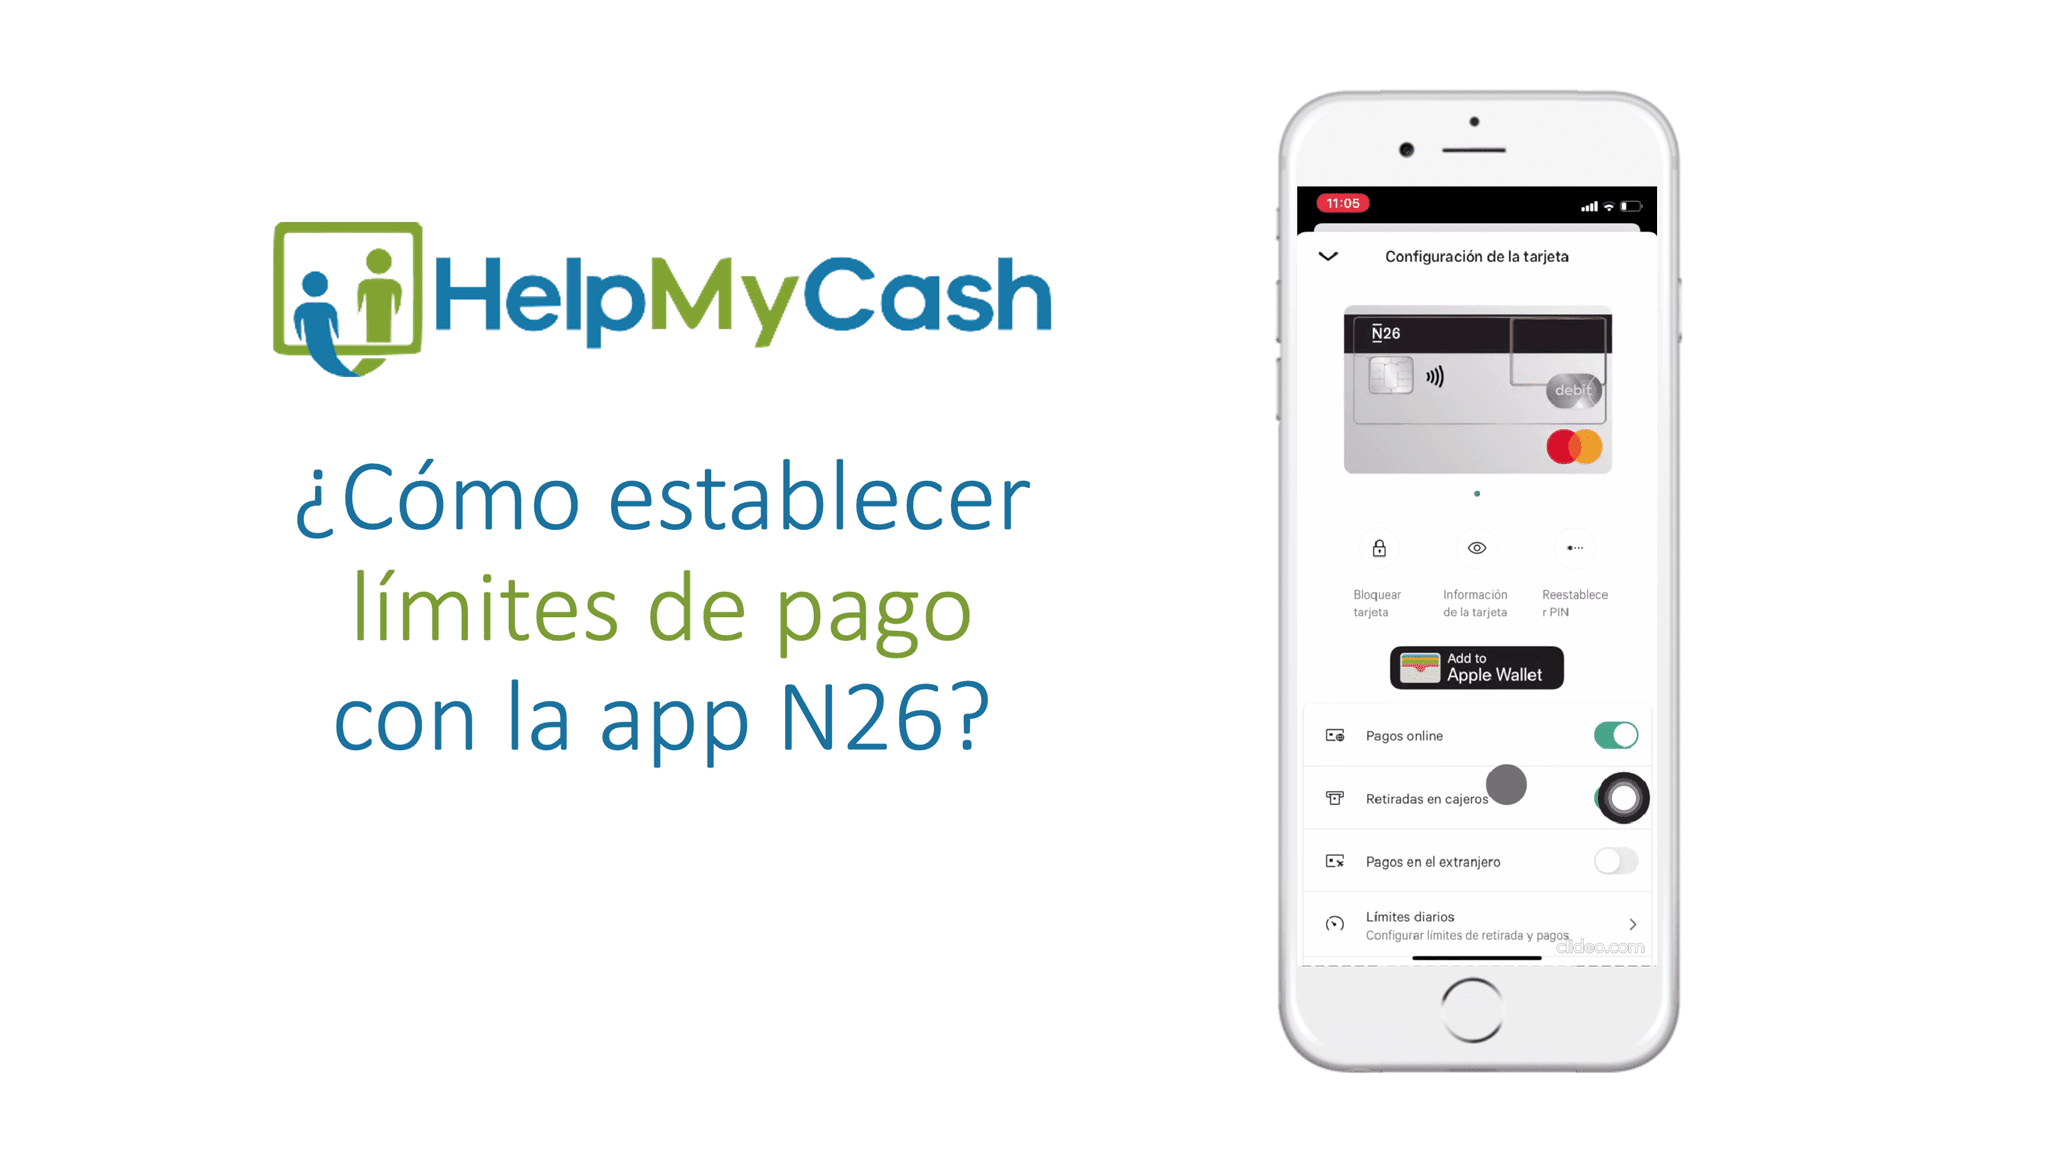 N26 - ¿Cómo establecer limites de pago con la app N26?